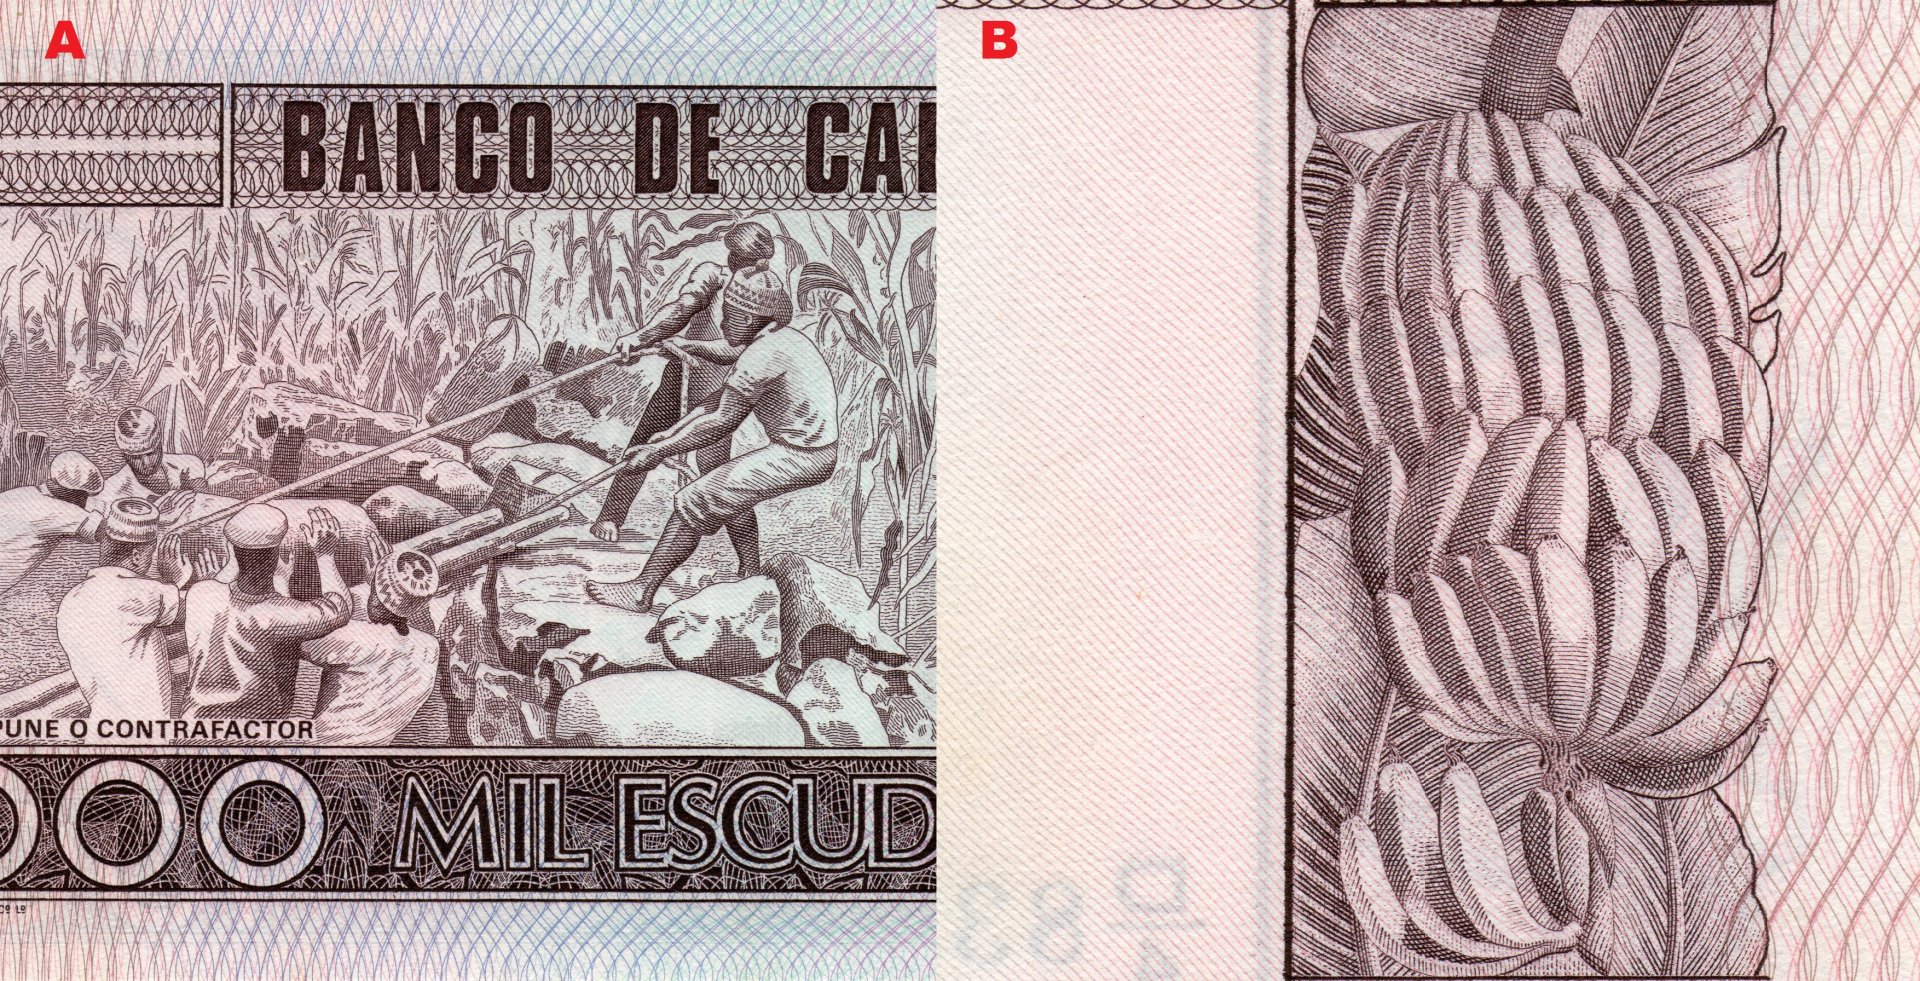 Obr. 4. A) Ústřední motiv reverzu bankovky – pohled na muže stavějící kamenné ohrazení. B) Ovoce banánovníku (Musa).